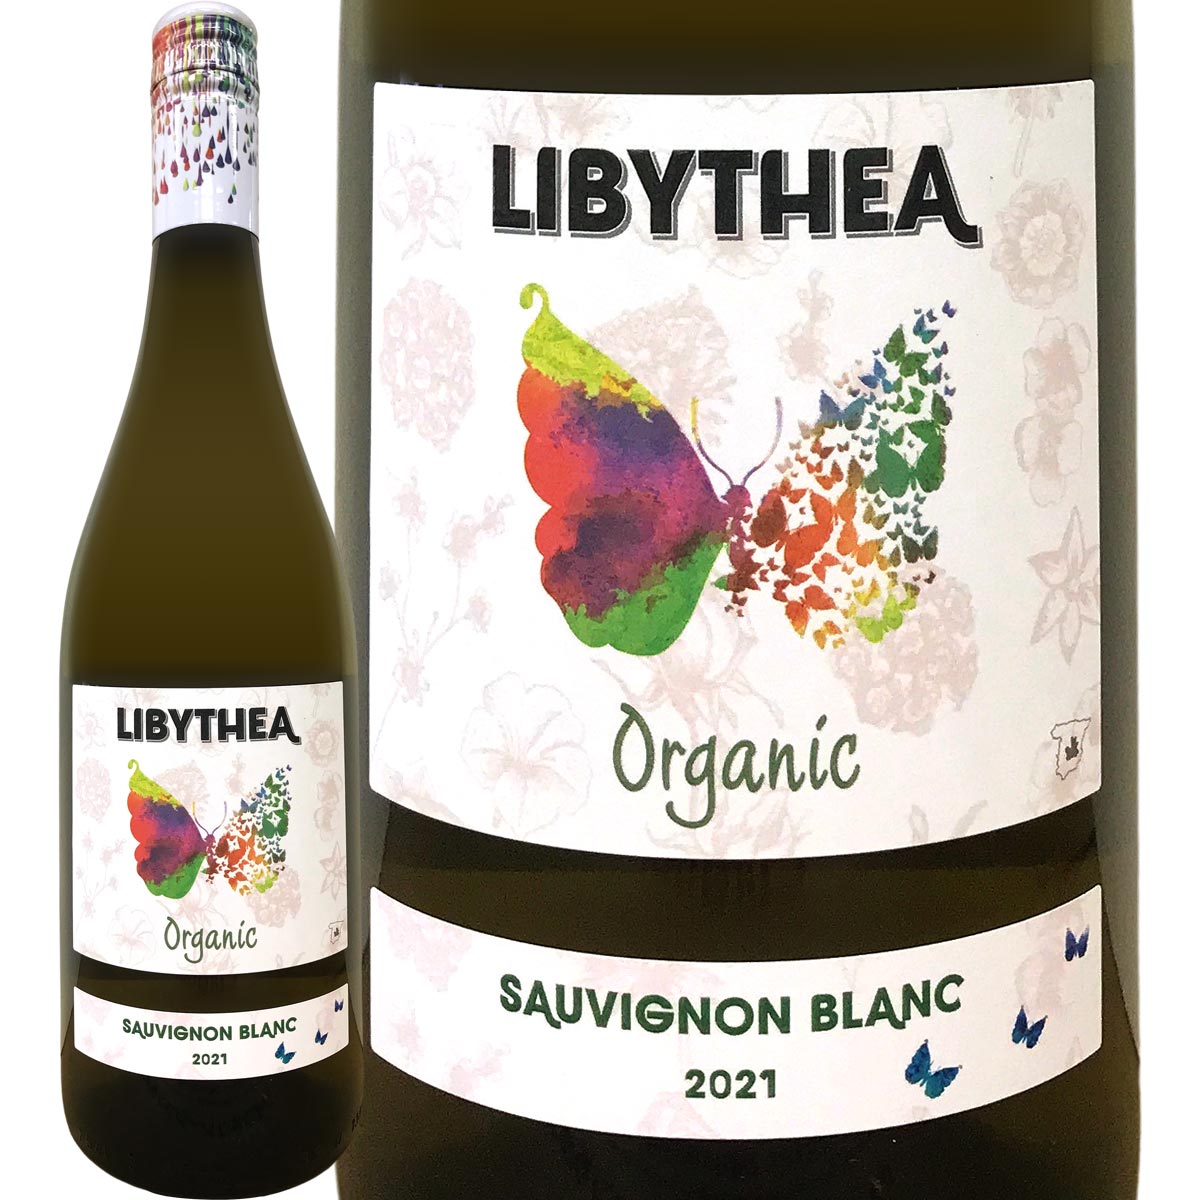 驚愕のハイコスパ!!ソーヴィニヨン・ブラン100％の有機オーガニック白ワイン!! 毎日でも飲みたいカジュアルなオーガニックワインです!! こちらの商品は最新ヴィンテージでのお届けになりますのでご了承くださいませ。 Libythea Sauvignon Blanc Organic, Bodegas Mureda, Vino de la Tierra de Castilla, Castilla-La Mancha, Spain ■色・容量：白750ml（スクリューキャップ使用） ■ALC：11.5% ■ブドウ品種：ソーヴィニヨン・ブラン100% ■産地：スペイン−カスティーリャ・ラ・マンチャ州−ビノ・デ・ラ・ティエラ・デ・カスティーリャ ■味わい：辛口 ■ラベル表示：酸化防止剤（亜硫酸塩） スペインの中でもハイコスパ産地として知られるラマンチャで生まれた、認証(CAAE)取得済みの完全有機栽培ブドウ使用のオーガニック白ワインなんです!! バイヤー一同驚愕したのは、その畑の標高!!何となんと、1,050mの超高地の畑から収穫したブドウを使用しているんです!! それはフランス、イタリア、ドイツ等のヨーロッパ銘醸地を含めて屈指の標高の高さ!!　比較的標高の高い畑が多いスペインにおいても、1,000m超えの畑は大変珍しいです。メセタと呼ばれる広大なスペイン中央台地の中でも、高地に位置する冷涼な畑というわけです。 しかもミネラル豊富な石灰岩土壌の畑から収穫したソーヴィニヨン・ブラン100％!! 夏の酷暑と冬の厳冬で知られる過酷な環境のラマンチャ。そんな産地にありながら、極めて標高が高く冷涼な畑、しかも完全有機栽培の畑で育っているので、このフレッシュかつフルーティなオーガニック白ワインが出来上がるんです!! このワインを造るボデガス・ムレダは、スペイン首都マドリードから南に約180kmのカスティーリャ・ラ・マンチャ州シウダ・レアル県バルデペーニャス地区に位置しています。バルデペーニャス村の中心地から北に約20kmの街道沿いにセラーを構えています。 セラーも含め周辺に1,200haもの広大な土地を所有しており、在来品種から国際品種まで幅広いブドウ品種を栽培しています。生産するワインも赤、白、スパークリング、甘口等、数多くのシリーズを展開。地元スペインはもちろん、世界各国に輸出して愛飲されています。 この［リビテア・ソーヴィニヨン・ブラン・オーガニック］は、ソーヴィニヨン・ブラン100％の白ワイン。ヨーロッパでも屈指の標高を誇る1,050mの超高地畑から収穫したブドウを使用しています。畑は完全有機栽培を実践しており、CAAE認証を取得しています。土壌は石灰岩。 13℃に維持したステンレスタンク内で15日間スキンコンタクトを行い、アルコール発酵させます。樽熟成はせず、有機栽培ブドウのフレッシュな果実味を楽しんでいただく白ワインです。 お手頃で美味しいワインをお探しの皆様、そして中でもオーガニックワインを選びたいお客様にとってもオススメの一本です！どうぞお試しくださいませ!! 関連商品ドラゴラ・オーガニック・ソーヴィニヨンブラン・ベルデホ（最新ヴィンテー...メレンス・テルセー・ブラン【スペイン】【カタルーニャ】【白ワイン】【7...リビテア・テンプラニーリョ・オーガニック（最新ヴィンテージでのお届け）...1,078円968円1,078円ドラゴラ・オーガニック・テンプラニーリョ・シラー（最新ヴィンテージでの...エミリアーナ・エコバランス・シャルドネ（最新ヴィンテージでお届け）...エミリアーナ・エコバランス・ゲヴェルツトラミネール（最新ヴィンテージで...1,078円1,078円1,078円プルポ・ロコ・ブランコ・ビウラ　2022【スペイン】【白ワイン】【75...ジャスピー・ブラン　2021【スペイン】【白ワイン】【750ml】【ミ...ラガール・デ・コスタ・アルバリーニョ・リアス・バイシャス　2022スペ...1,298円1,958円3,080円チャコリ・K5・アルギニャーノ　2020【スペイン】【白ワイン】【75...マス・ブランチ・イ・ジョヴェ・プティ・サオ・ブラン　2021【スペイン...ルナ・ベベリデ・ゴデーリョ・ビエルソ　2021【スペイン】【白ワイン】...3,740円2,090円2,420円驚愕コスパのオーガニック白ワイン!!欧州屈指1,050mの超高地畑で育った有機ソーヴィニヨン・ブラン100％!! 有機栽培を象徴する蝶の可愛らしいラベルが目印!!しかし中身は本格派!! 有機認証(CAAE)取得!!完全有機栽培オーガニックブドウ使用!! 中央台地メセタを擁する高地畑の宝庫スペインでも珍しいほどの標高!!土壌はミネラル豊富な石灰岩!! レモン果汁のようなフレッシュな果実味とシャープで豊かな酸、ピュアでクリーンな飲み心地!! あらゆる料理にマッチ！ご自身でお気に入りのペアリングを見つけて、カジュアルに楽しんでみてください！ ※こちらの商品は最新ヴィンテージでのお届けとなります。 [リビテア・ソーヴィニヨン・ブラン・オーガニック] ヨーロッパでも屈指の標高1,050mを誇る、冷涼な高地畑。完全有機栽培（認証取得済）で育ったソーヴィニヨン・ブラン100％のオーガニック白ワインです。 お手頃で美味しいワインをお探しの皆様!! そして中でも、有機栽培のオーガニックワインを選びたいお客様!! とってもオススメの白ワインがコレです!! その名も、 　　［リビテア・ソーヴィニヨン・ブラン・オーガニック］!!!! スペインの中でもハイコスパ産地として知られるラマンチャで生まれた、認証(CAAE)取得済みの完全有機栽培ブドウ使用のオーガニック白ワインなんです!! バイヤー一同驚愕したのは、その畑の標高!!何となんと、1,050mの超高地の畑から収穫したブドウを使用しているんです!! それはフランス、イタリア、ドイツ等のヨーロッパ銘醸地を含めて屈指の標高の高さ!!　比較的標高の高い畑が多いスペインにおいても、1,000m超えの畑は大変珍しいです。メセタと呼ばれる広大なスペイン中央台地の中でも、高地に位置する冷涼な畑というわけです。 しかもミネラル豊富な石灰岩土壌の畑から収穫したソーヴィニヨン・ブラン100％!! 夏の酷暑と冬の厳冬で知られる過酷な環境のラマンチャ。そんな産地にありながら、極めて標高が高く冷涼な畑、しかも完全有機栽培の畑で育っているので、このフレッシュかつフルーティなオーガニック白ワインが出来上がるんです!! ぜひともこの素晴らしいお値打ちワインをお試しくださいませ。 レモンライムやグレープフルーツのシトラス、青リンゴのフレッシュなアロマがまずグラスから飛び出してきます。さらに温度が上がると白桃、キウイ、パイナップル、青パパイヤなどの果肉感あるフルーティなアロマも現れてきます。続いてタイムやフェンネルのフレッシュハーブのニュアンスも。とても新鮮で清涼感のある香りに癒されます。口に含めば、レモン果汁のようなフレッシュな果実味とシャープで豊かな酸、野生のハーブのようなすがすがしさ。ほのかに感じるグレープフルーツの皮のようなビター味が実に快適で、軽やか且つピュアでクリーンな飲み心地。ひっかかりがなくなめらかな口当たりで、思わずお代わりが欲しくなってしまう心地良い白ワインです。 チキンブレストとベビーリーフやハーブのサラダ、オリーブオイルをかけた野菜のグリル、イカのリング揚げなどあらゆる料理にマッチします！ご自身でお気に入りのペアリングを見つけて、カジュアルに楽しんでみてください！ こんなお値打ちオーガニック白ワインなら、毎日でも飲みたくなってしまいます！ ぜひとも日常のお楽しみに、このワインをたっぷり味わってくださいませ!!